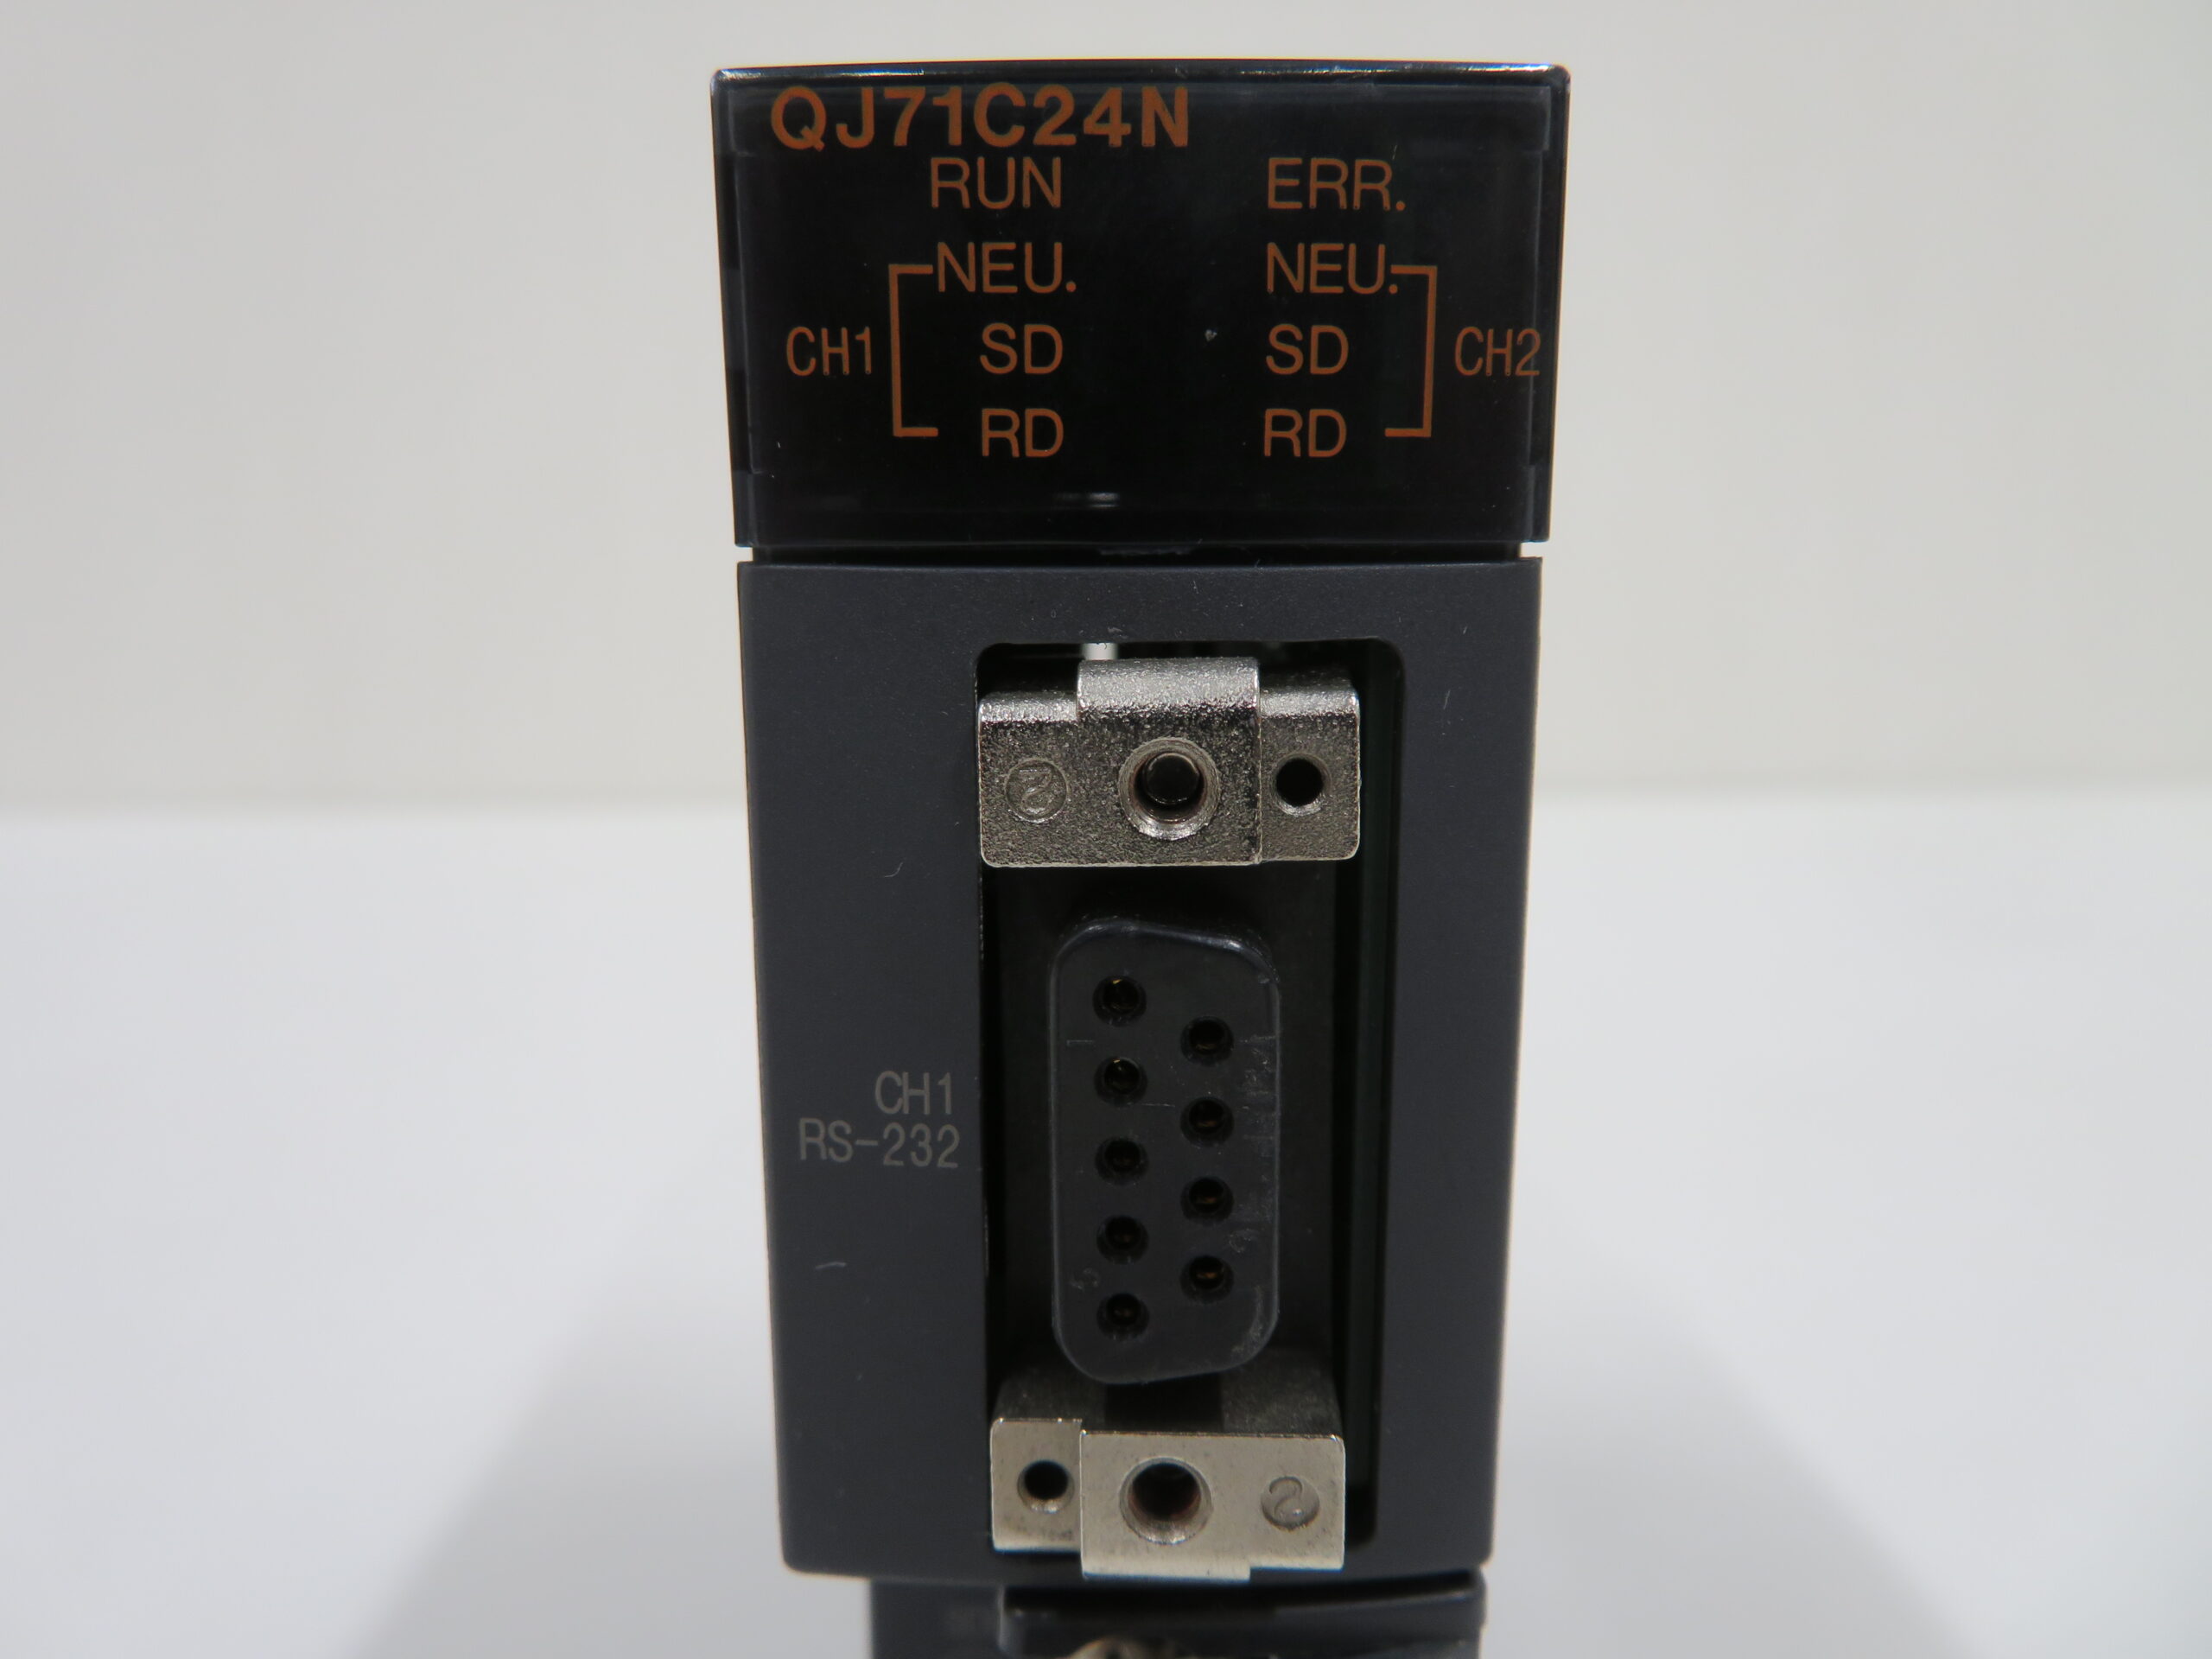 三菱電機 シリアルコミュニケーションユニット QJ71C24N | 2nd FA 